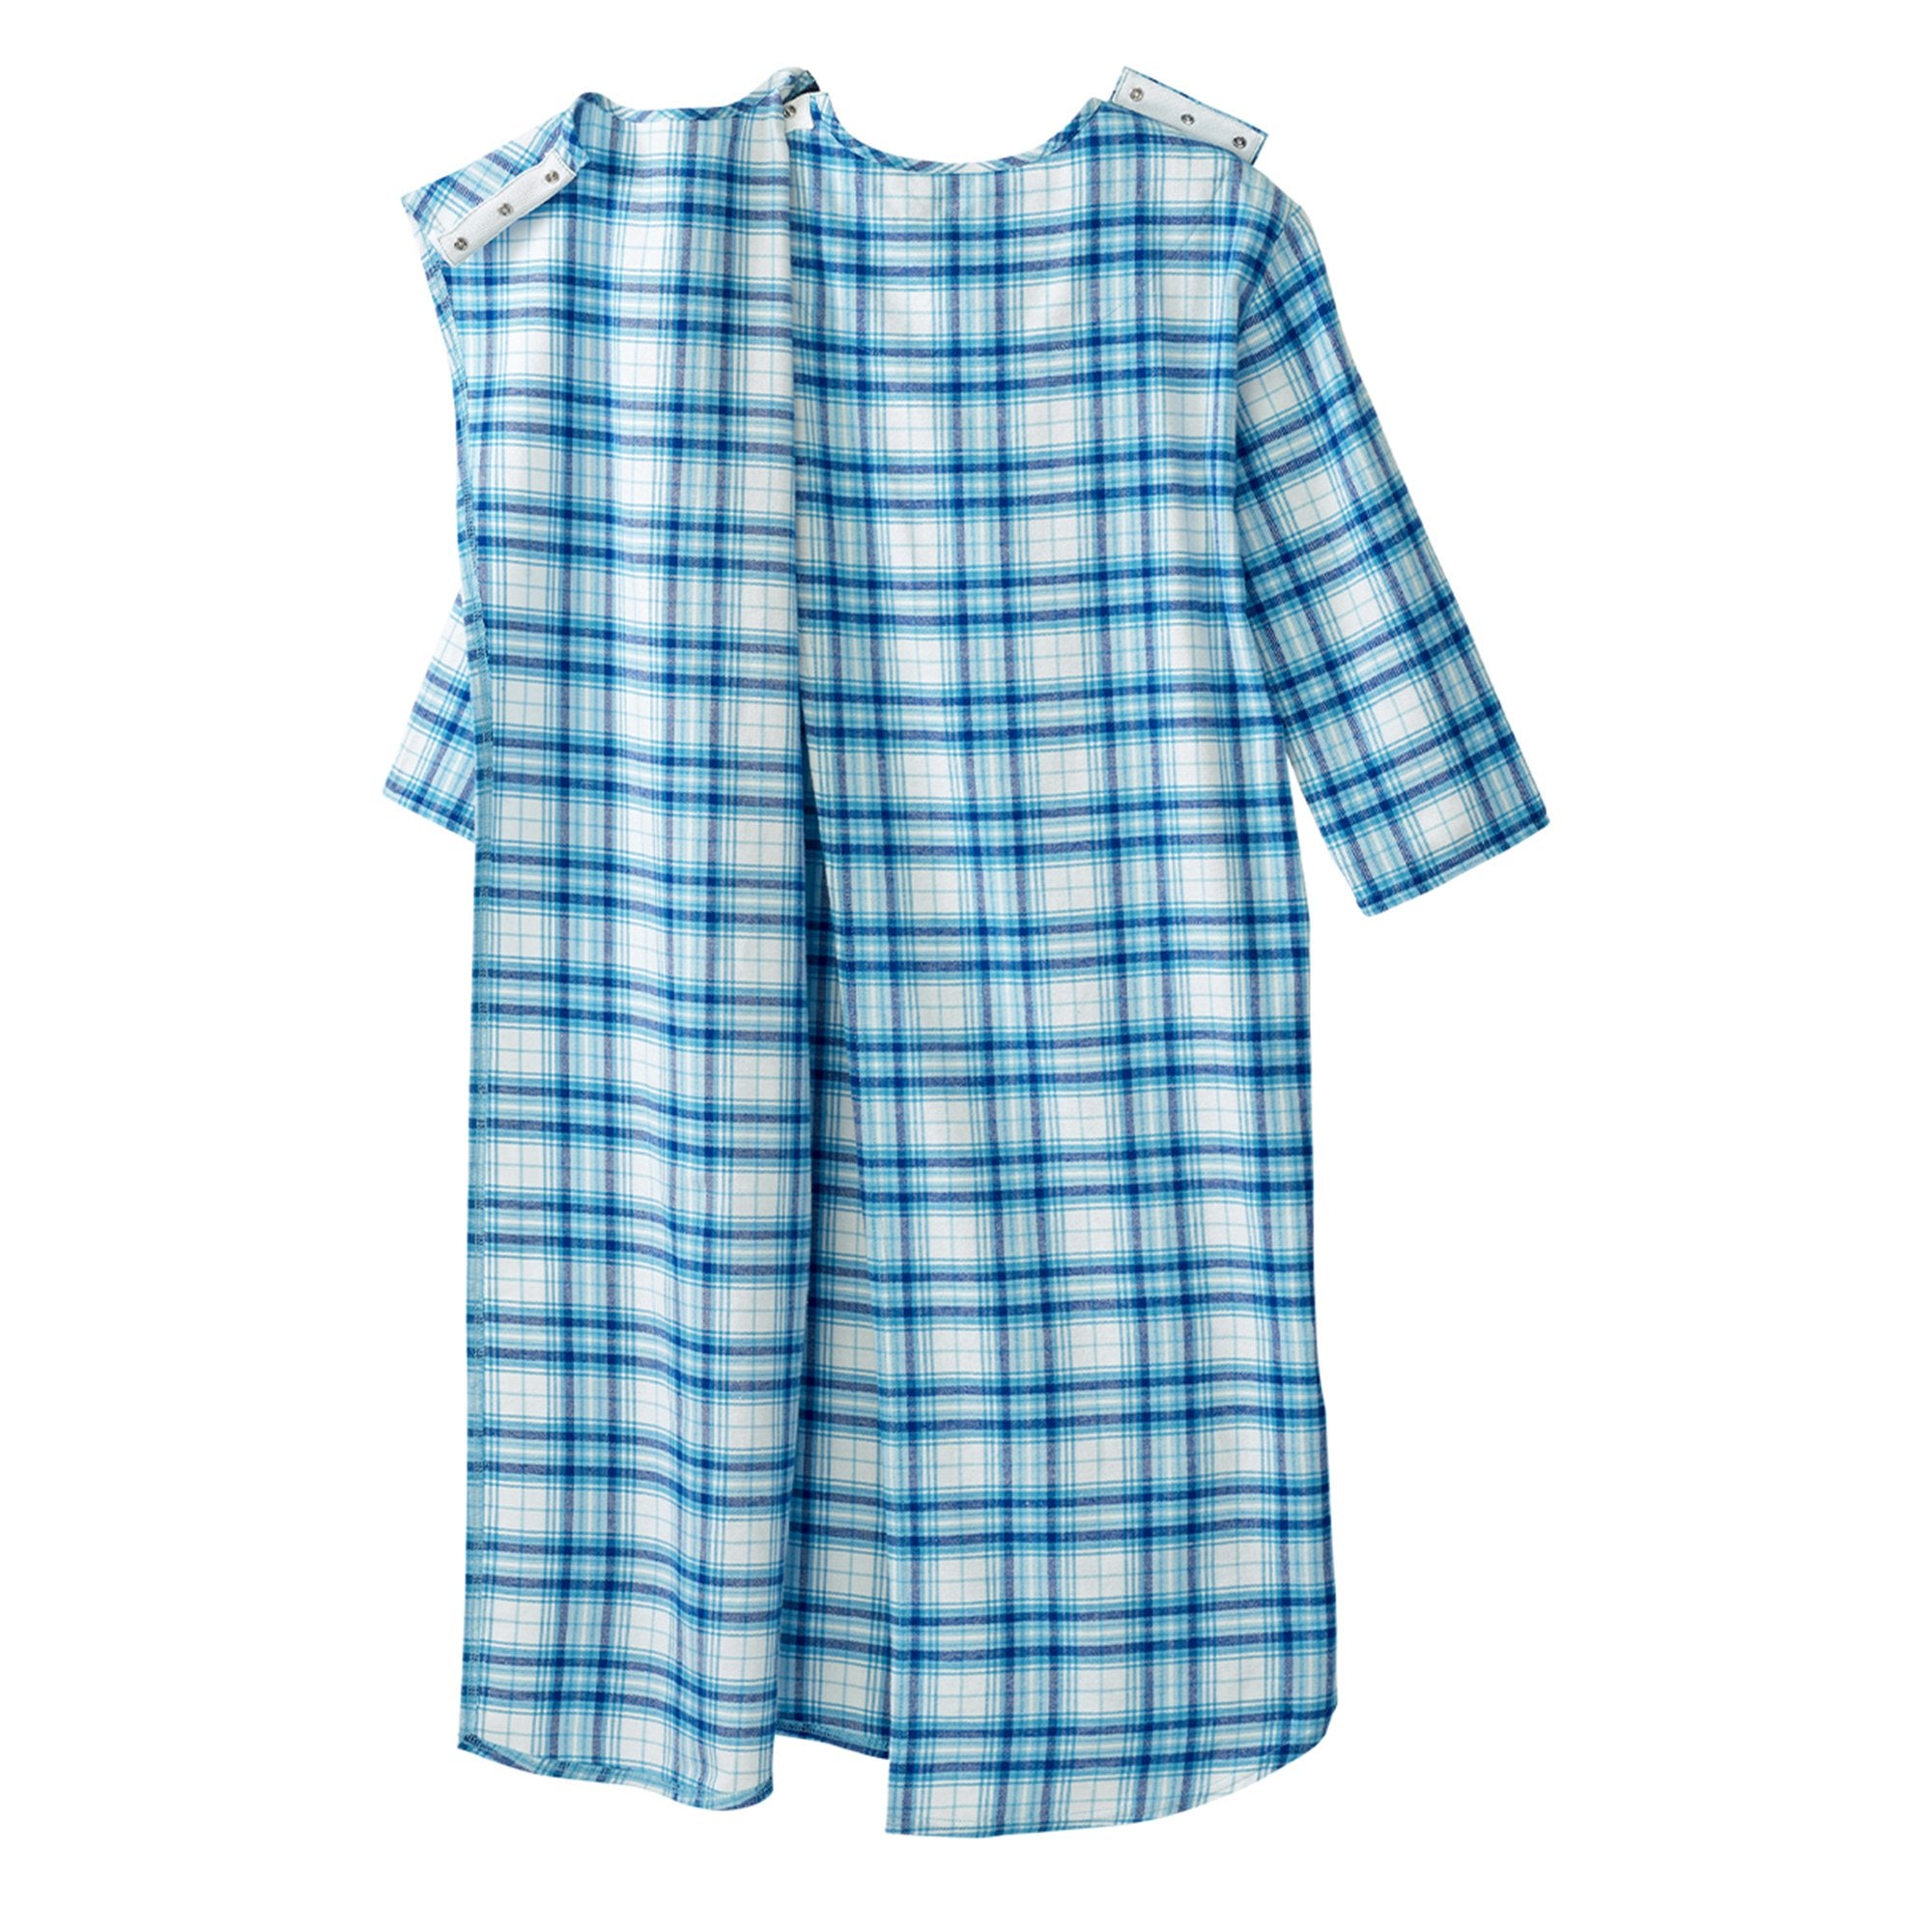 Silverts® Shoulder Snap Patient Exam Gown, 2X-Large, Turquoise Plaid (1 Unit)